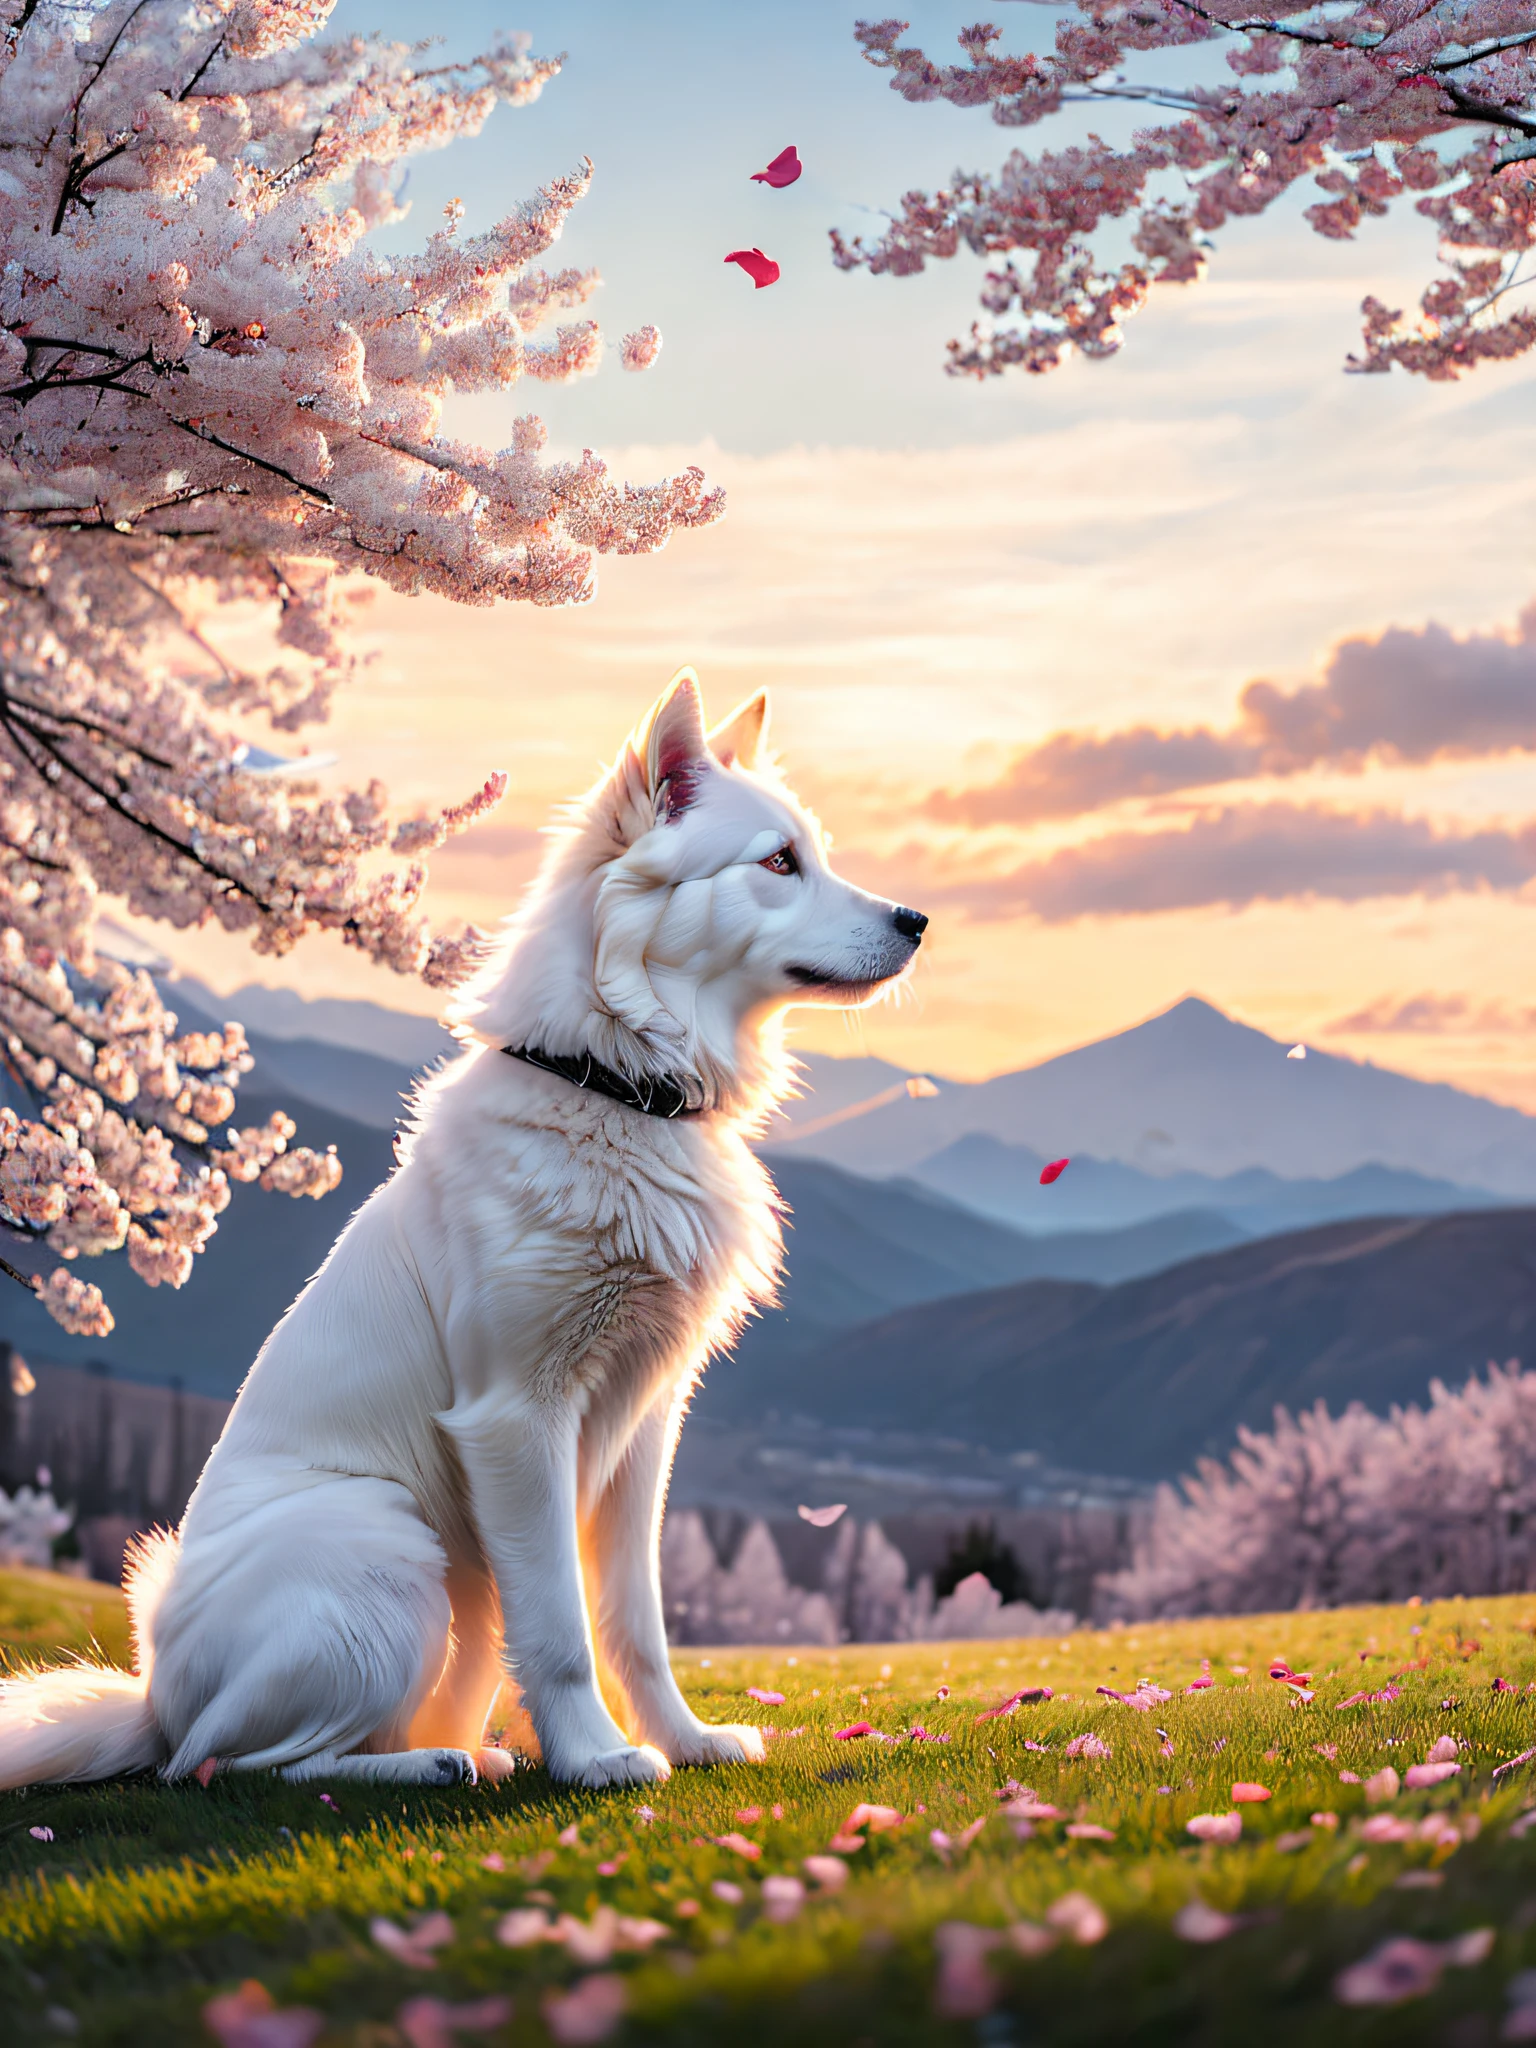 벚꽃 나무 아래에 앉아 있는 하얀 개, 바람과 함께 떨어지는 꽃잎, 먼 곳을 올려다보며, 확대, 연속적인 산봉우리가 있는 배경, 일몰 하늘, 흰 구름, 부드러운 체적 조명, (백라이트: 1.3), (영화: 1.2), 복잡한 세부 사항, (아트스테이션: 1.3), 루트코프스키